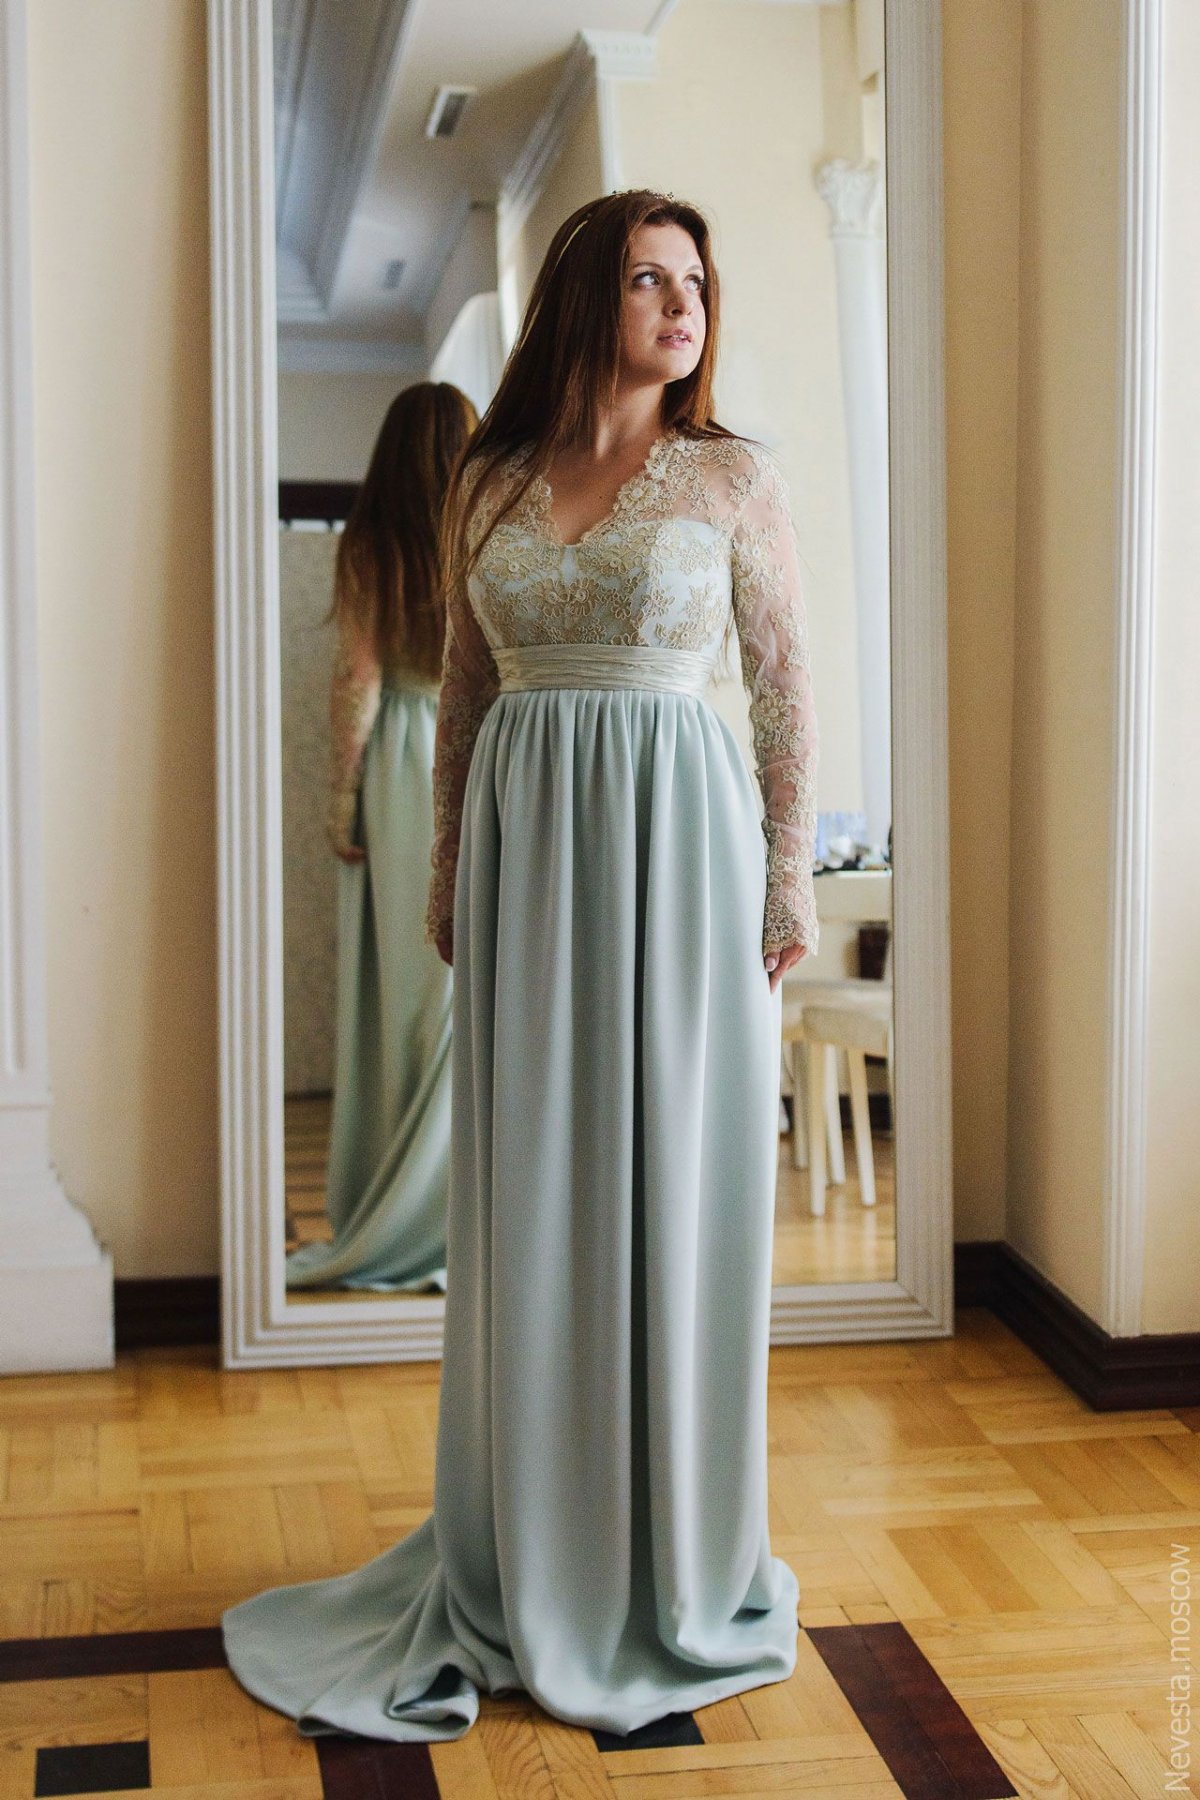 Анастасия Денисова примеряет свадебное платье фото 2